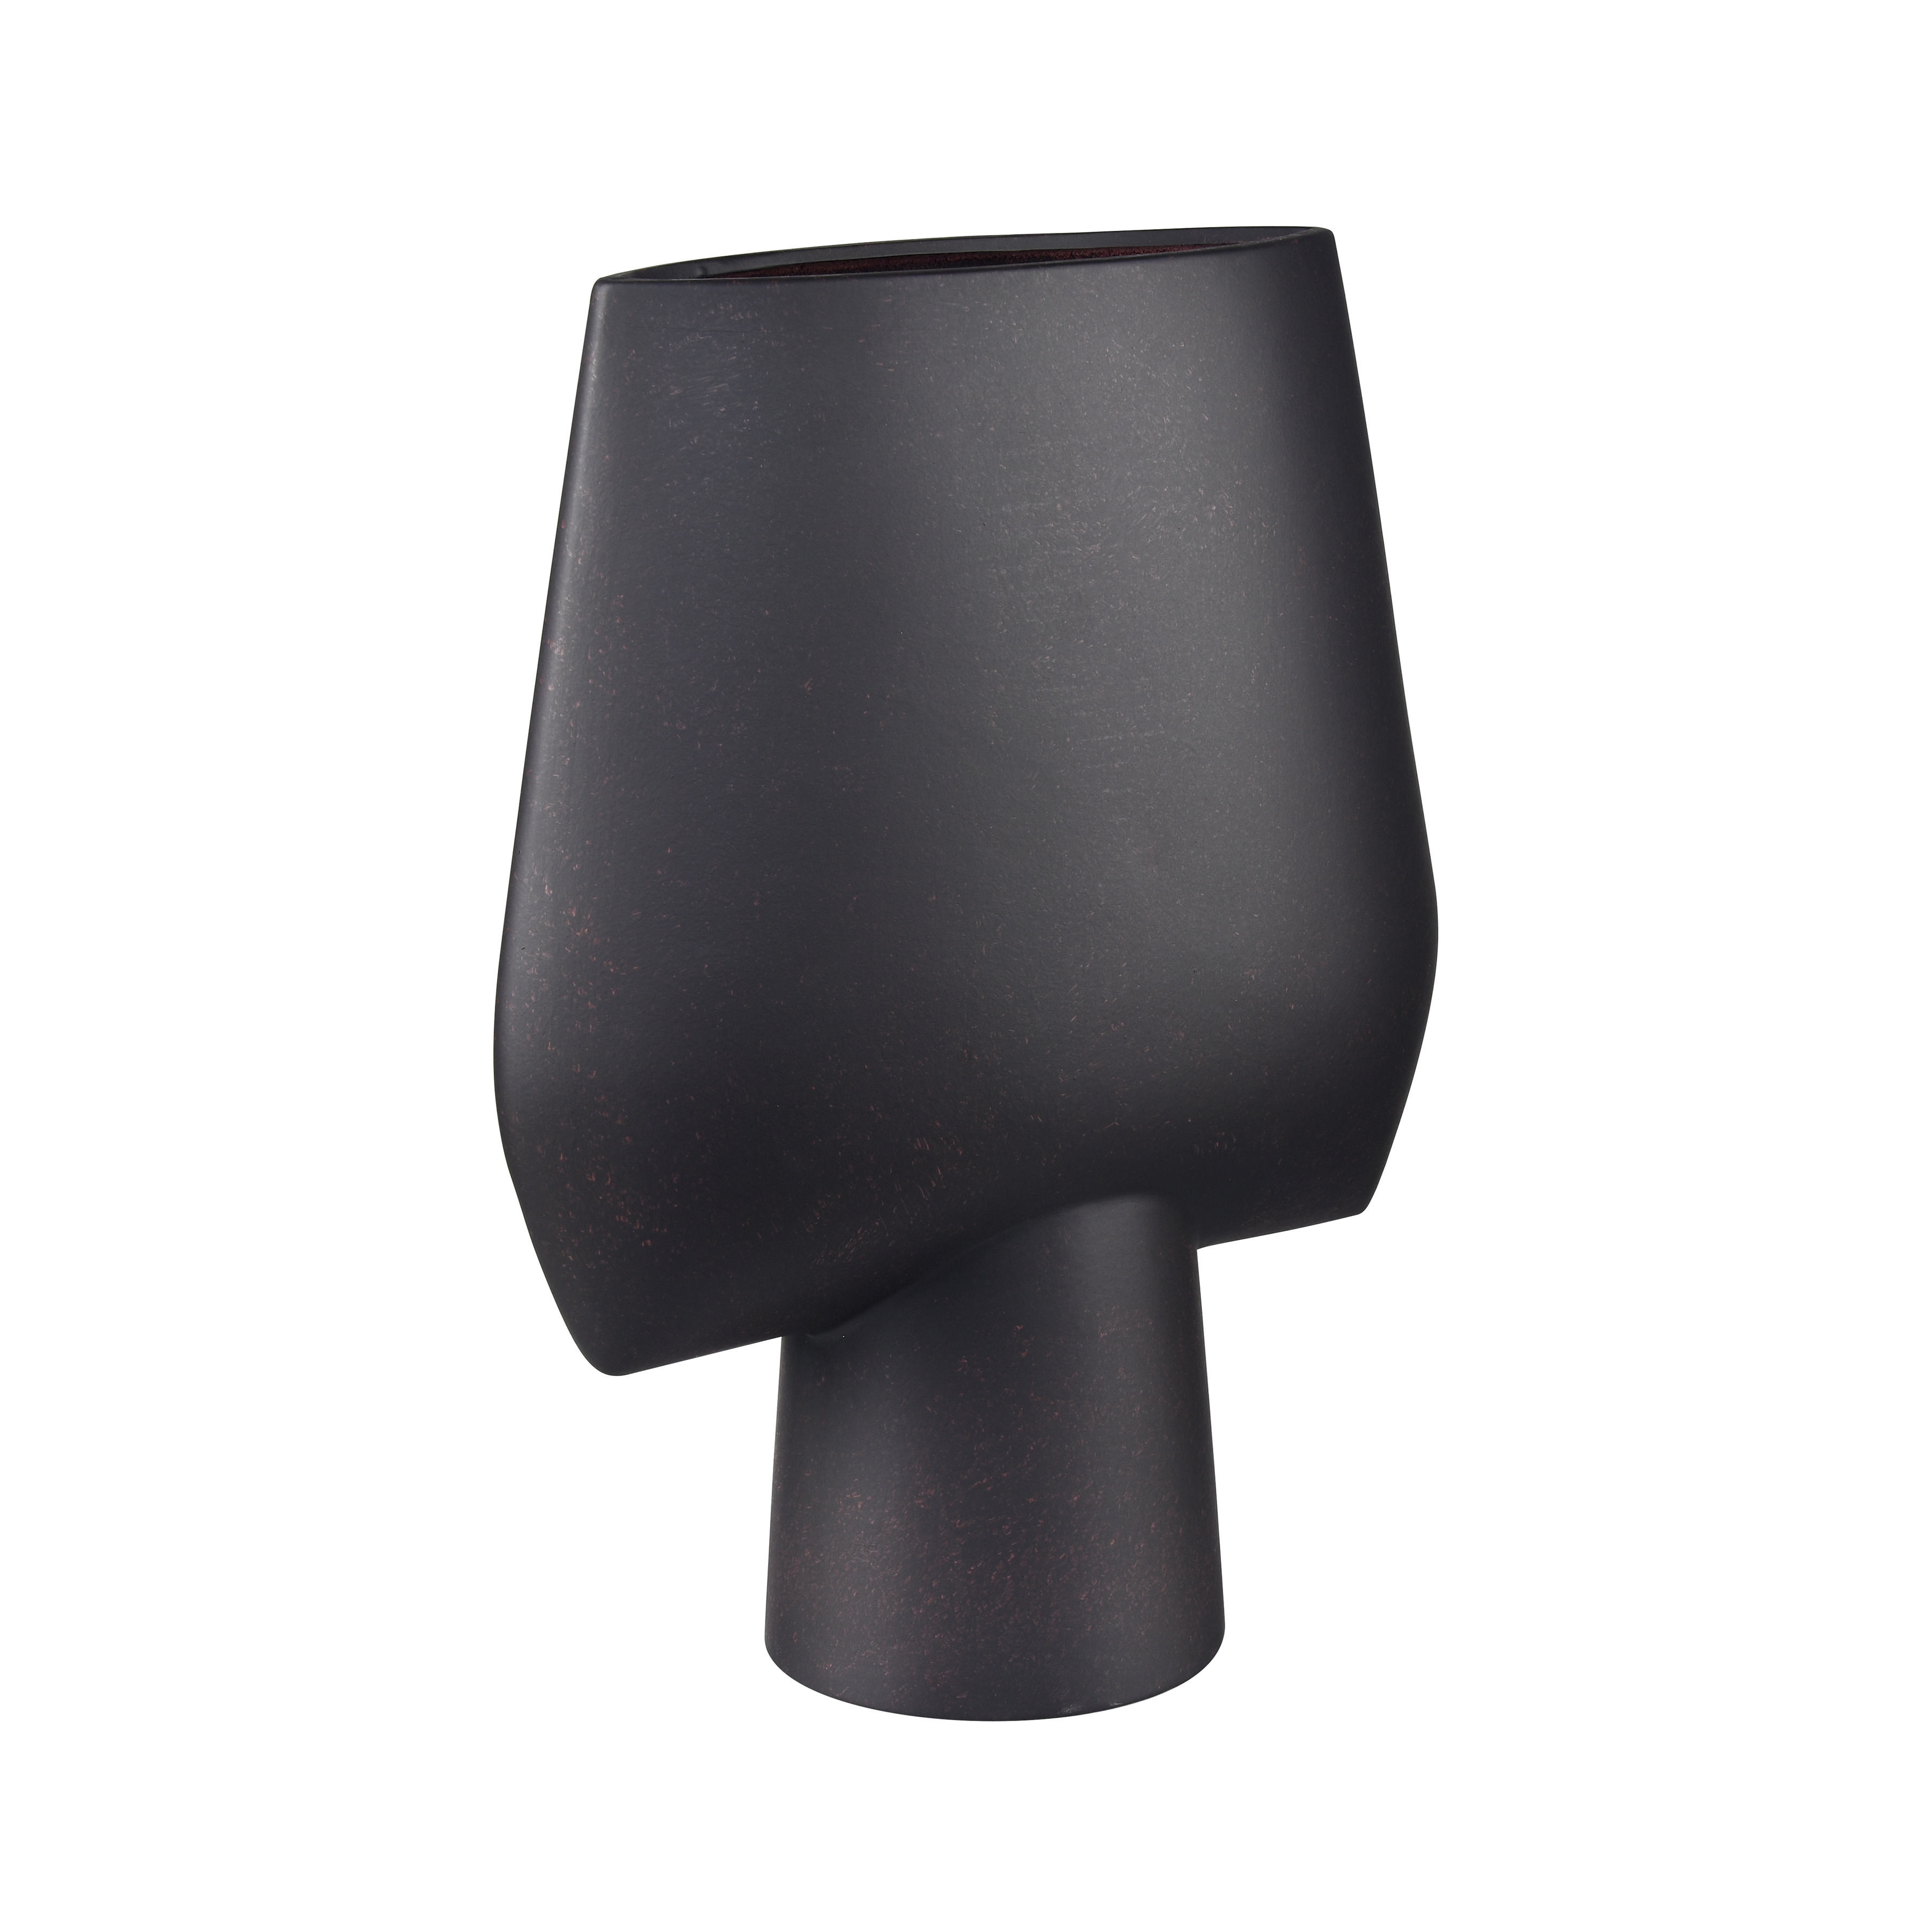 Hawking Vase - Extra Large Black - Image 1